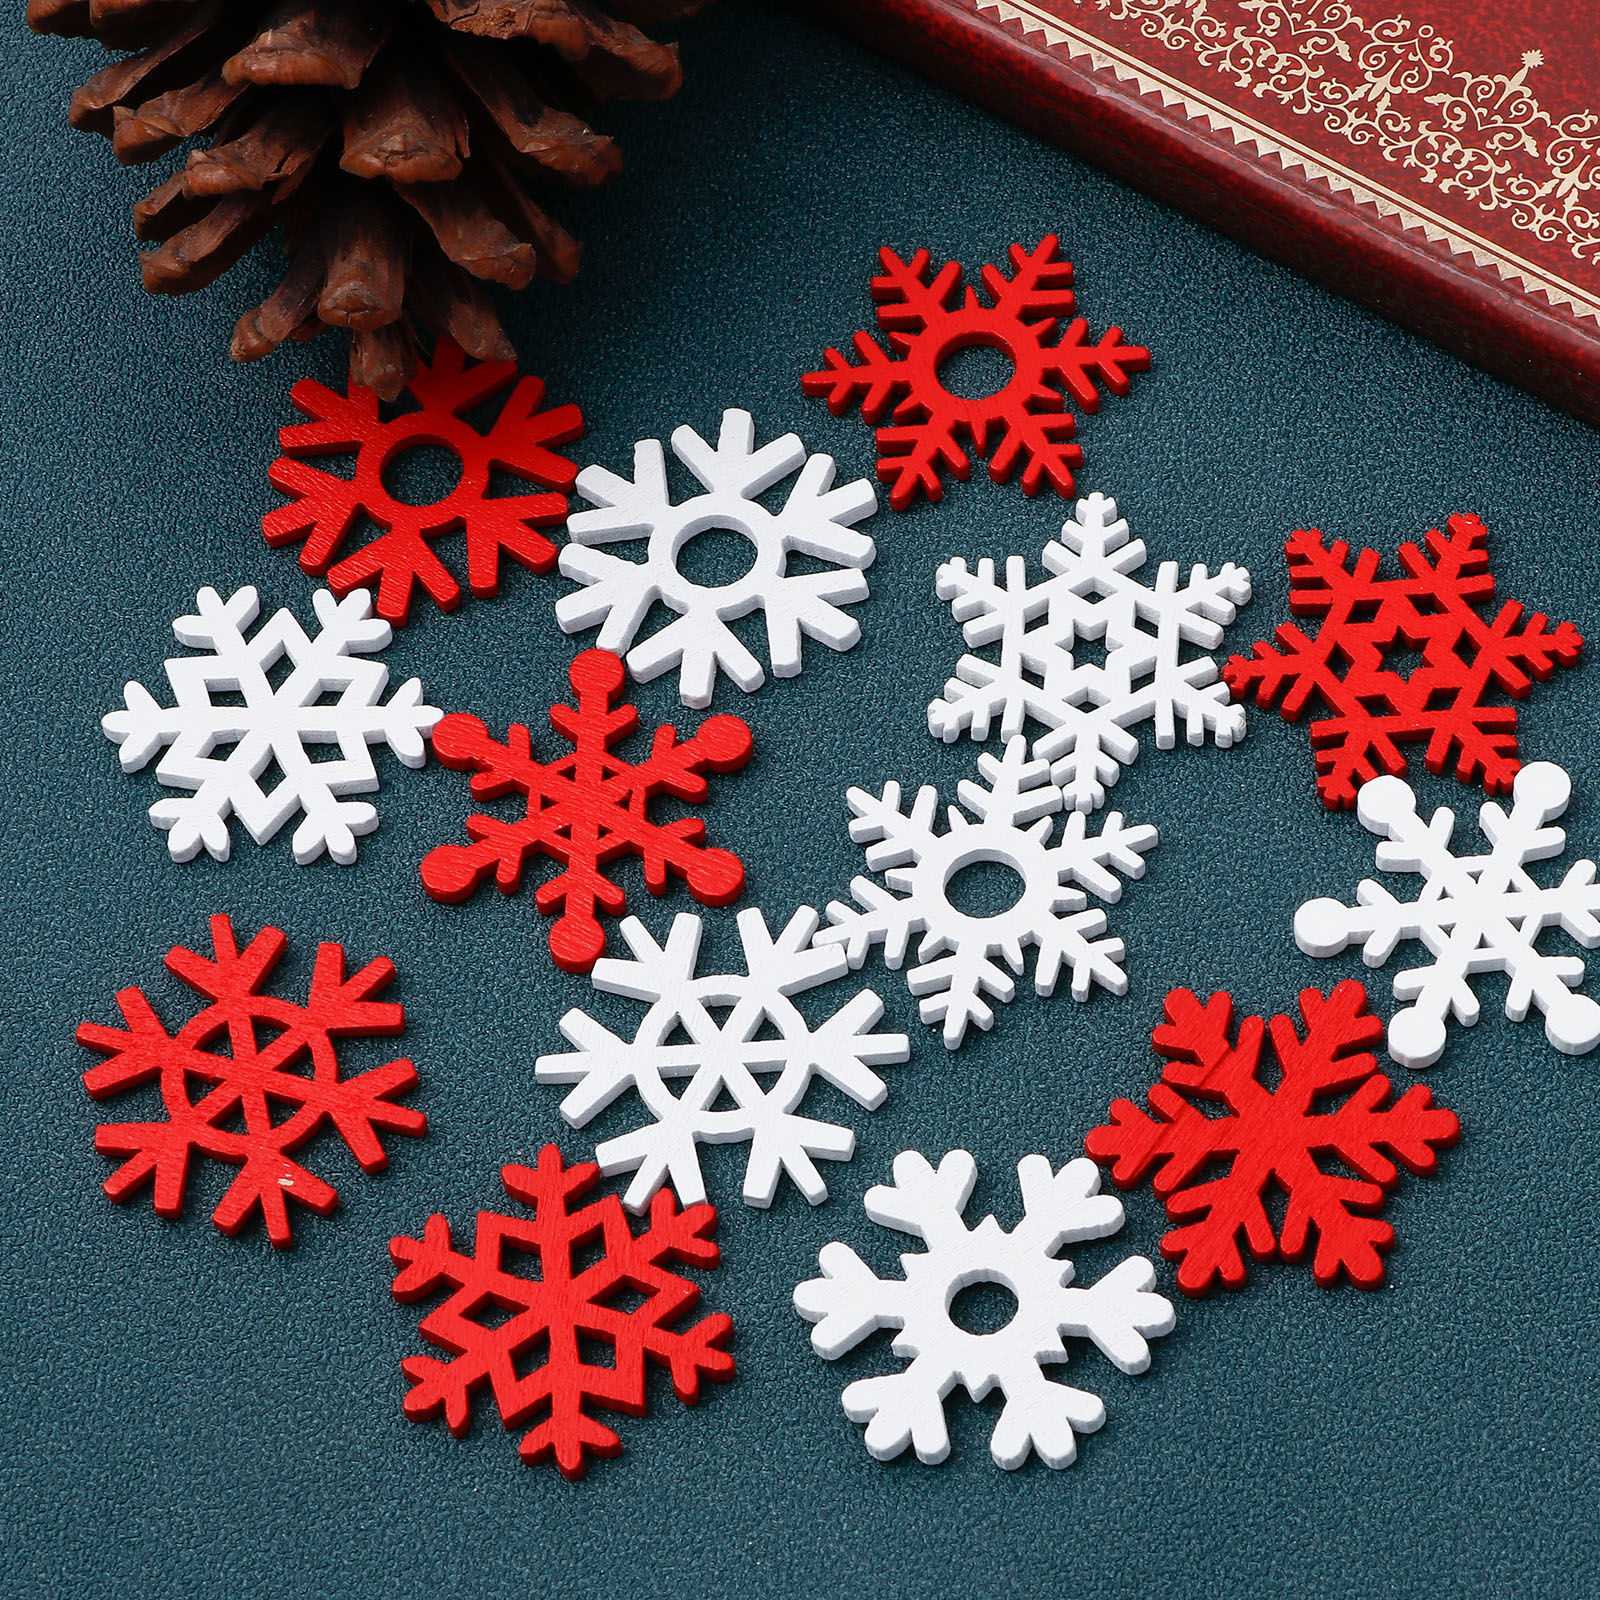 Bild von Holz Embellishments Cabochons Scrapbooking Weihnachten Schneeflocke Bunt 3.5cm x 3cm , 50 Stück